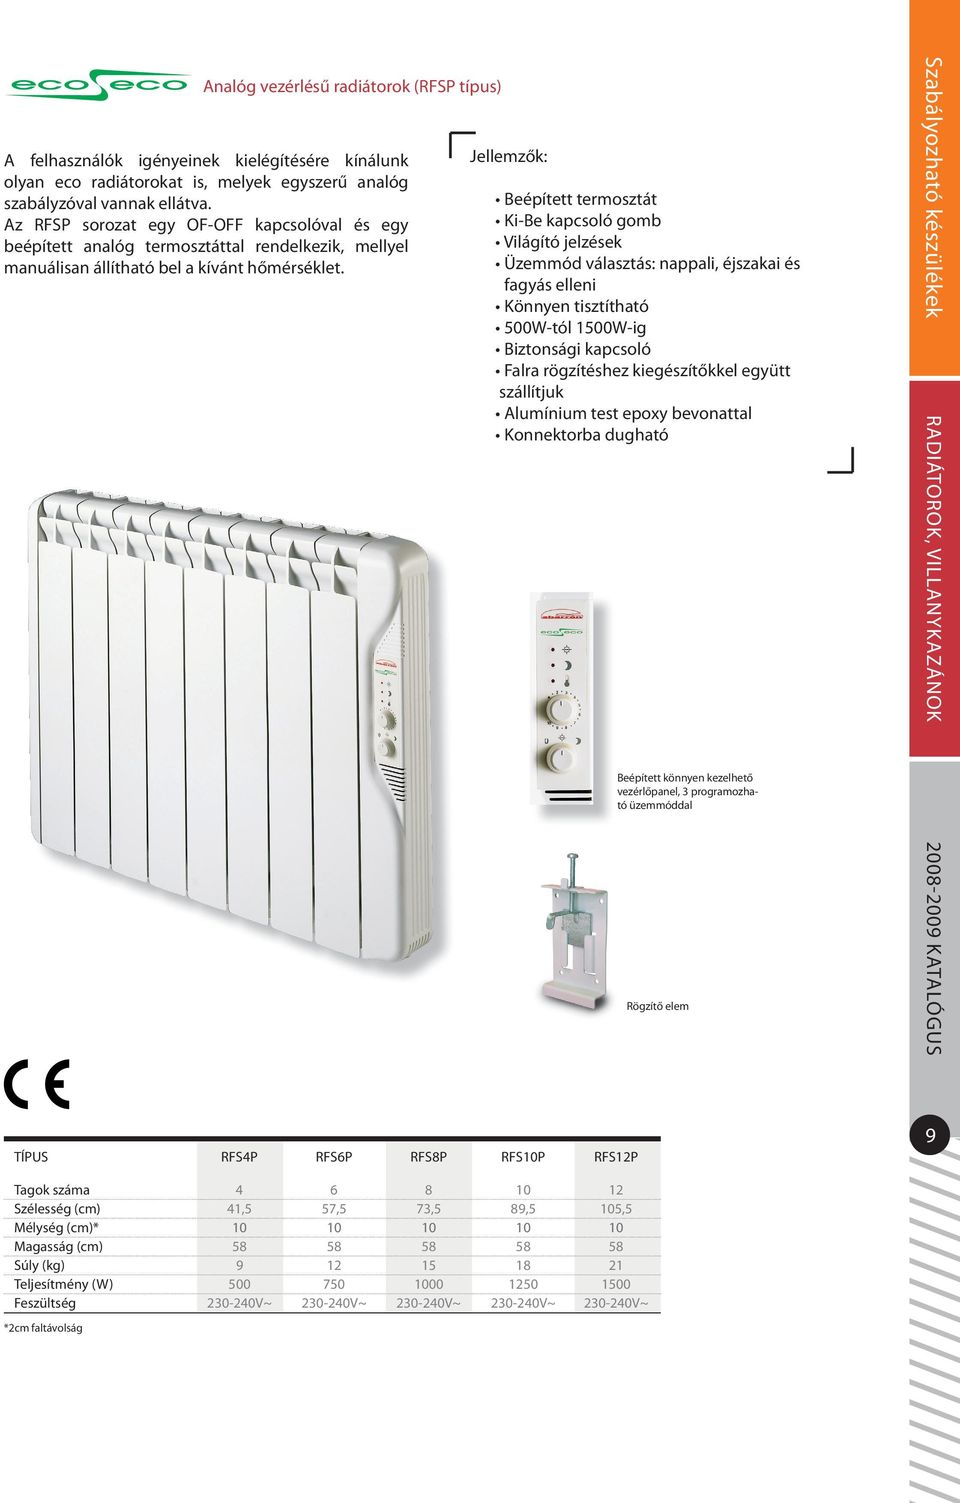 Beépített termosztát Ki-Be kapcsoló gomb Világító jelzések Üzemmód választás: nappali, éjszakai és fagyás elleni Könnyen tisztítható 500W-tól 1500W-ig Biztonsági kapcsoló Falra rögzítéshez